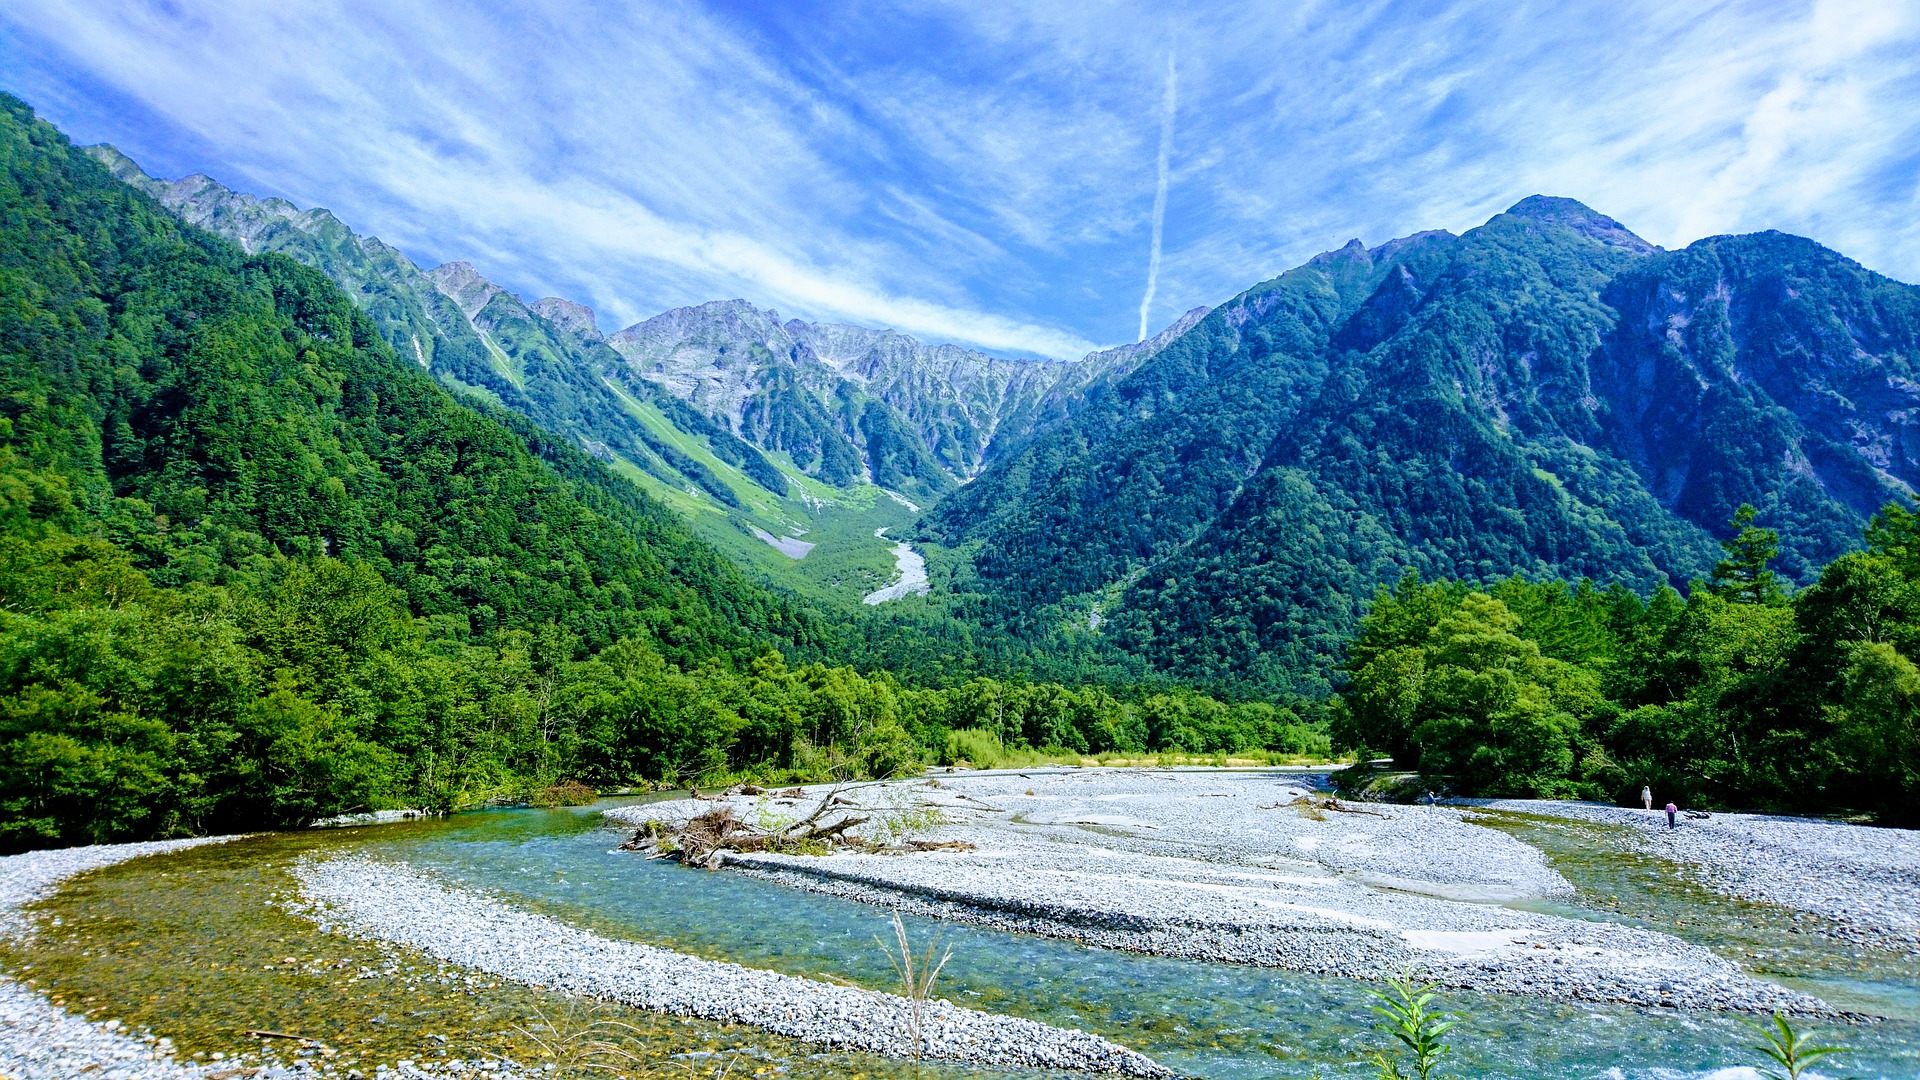 Kamikōchi Tốt nhất cho leo núi  Một trong những khung cảnh thiên nhiên tuyệt đẹp nhất ở Nhật Bản, Kamikōchi là một thung lũng sông vùng cao được bao bọc bởi những đỉnh núi cao vút của Dãy núi Alps phía Bắc Nhật Bản . Có thể đi bộ dễ dàng trong ngày dọc theo Azusa-gawa nguyên sơ qua những khu rừng liễu, đường tùng và cây du thanh bình. Nơi sản sinh ra môn leo núi Nhật Bản, Kamikōchi cũng là cửa ngõ cho những chuyến đi thử thách hơn lên một số ngọn núi cao nhất của đất nước, chẳng hạn như Yari-ga-take (3180m). Ô tô tư nhân bị cấm vào Kamikōchi, điều này làm giảm tác động của đám đông.